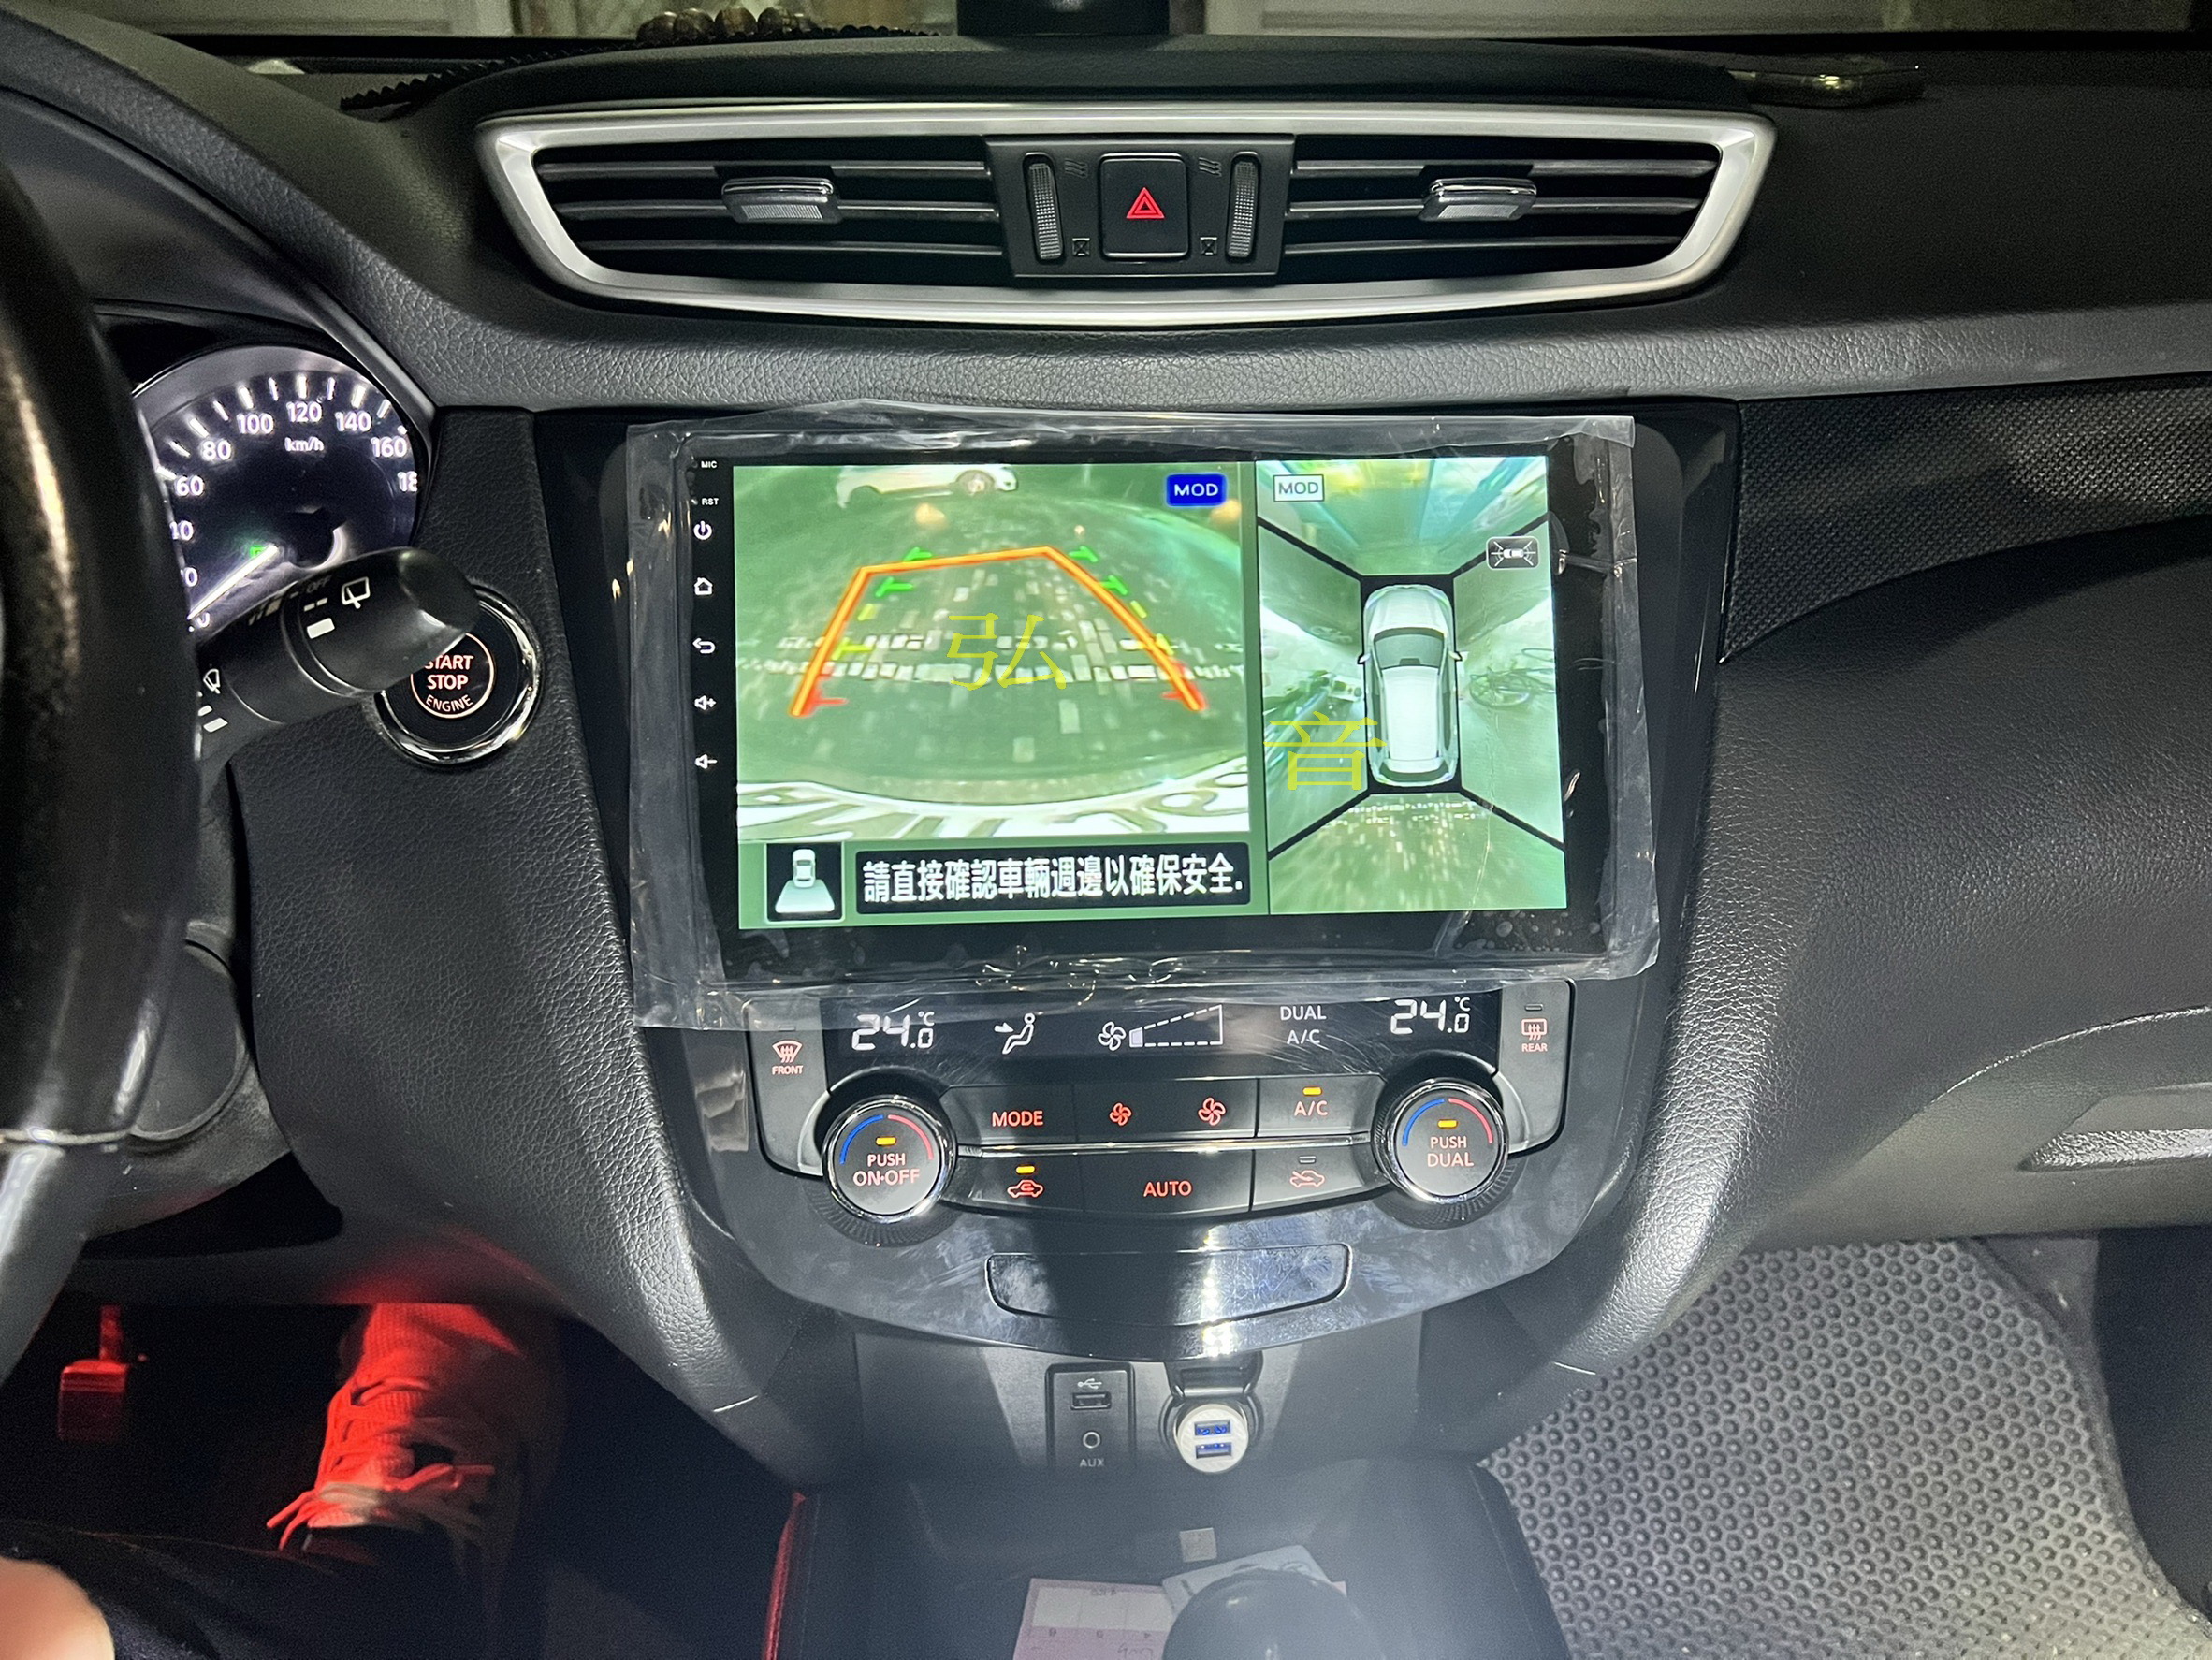 日產 Nissan X-Trail 專用機 Android 安卓版觸控螢幕主機 導航/USB/方控/倒車/藍芽/原廠環景